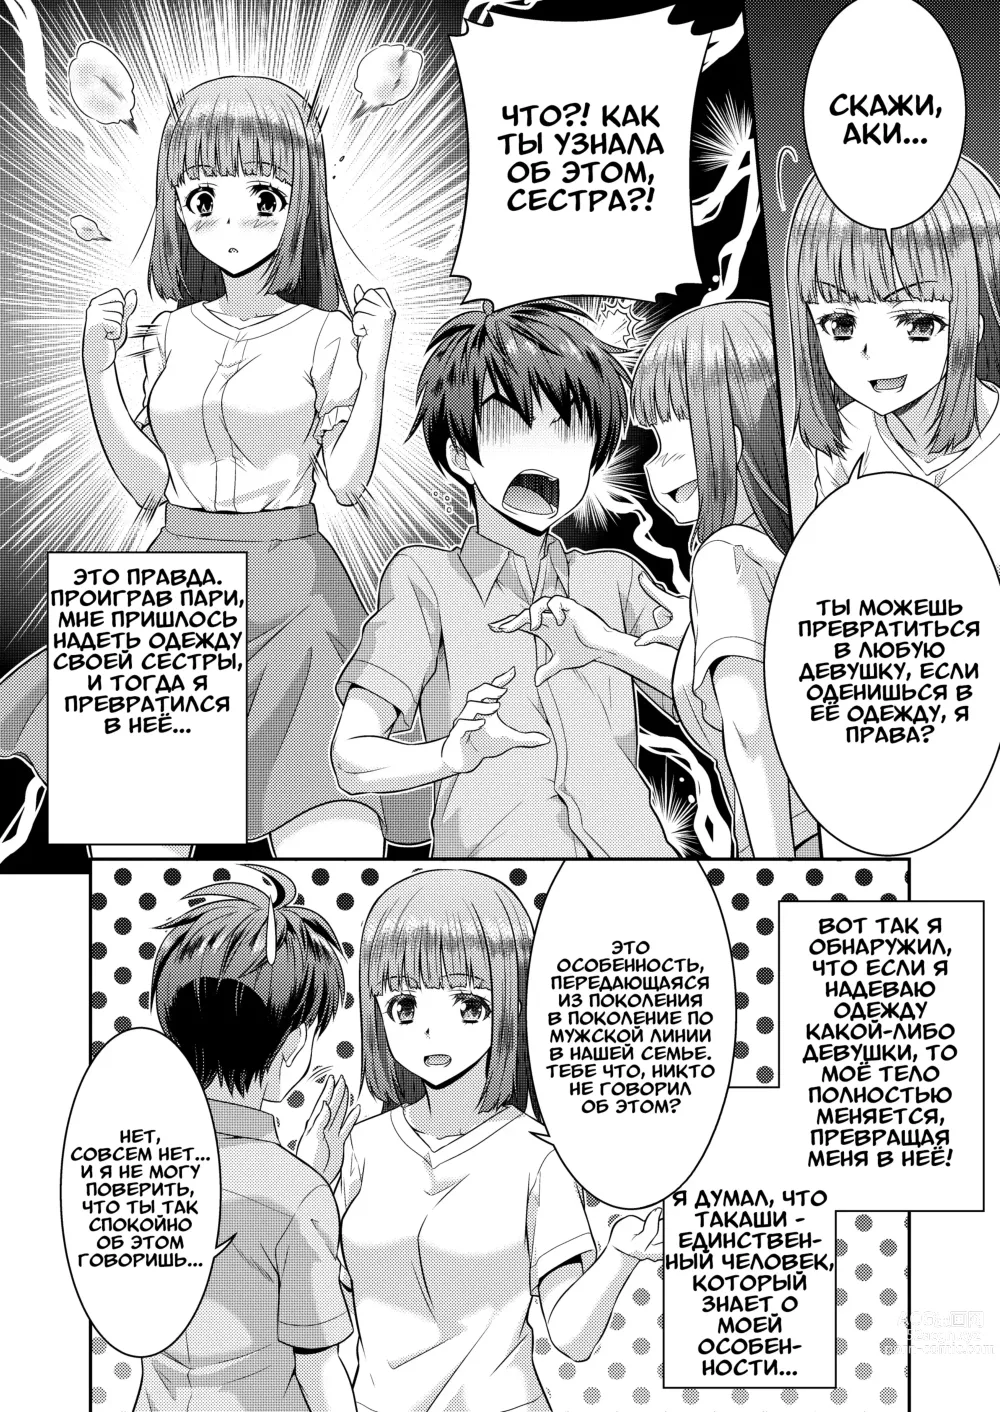 Page 3 of doujinshi Метаморфозы 2 ★ ~Как я начал превращаться в девушек, в одежду которых переодевался